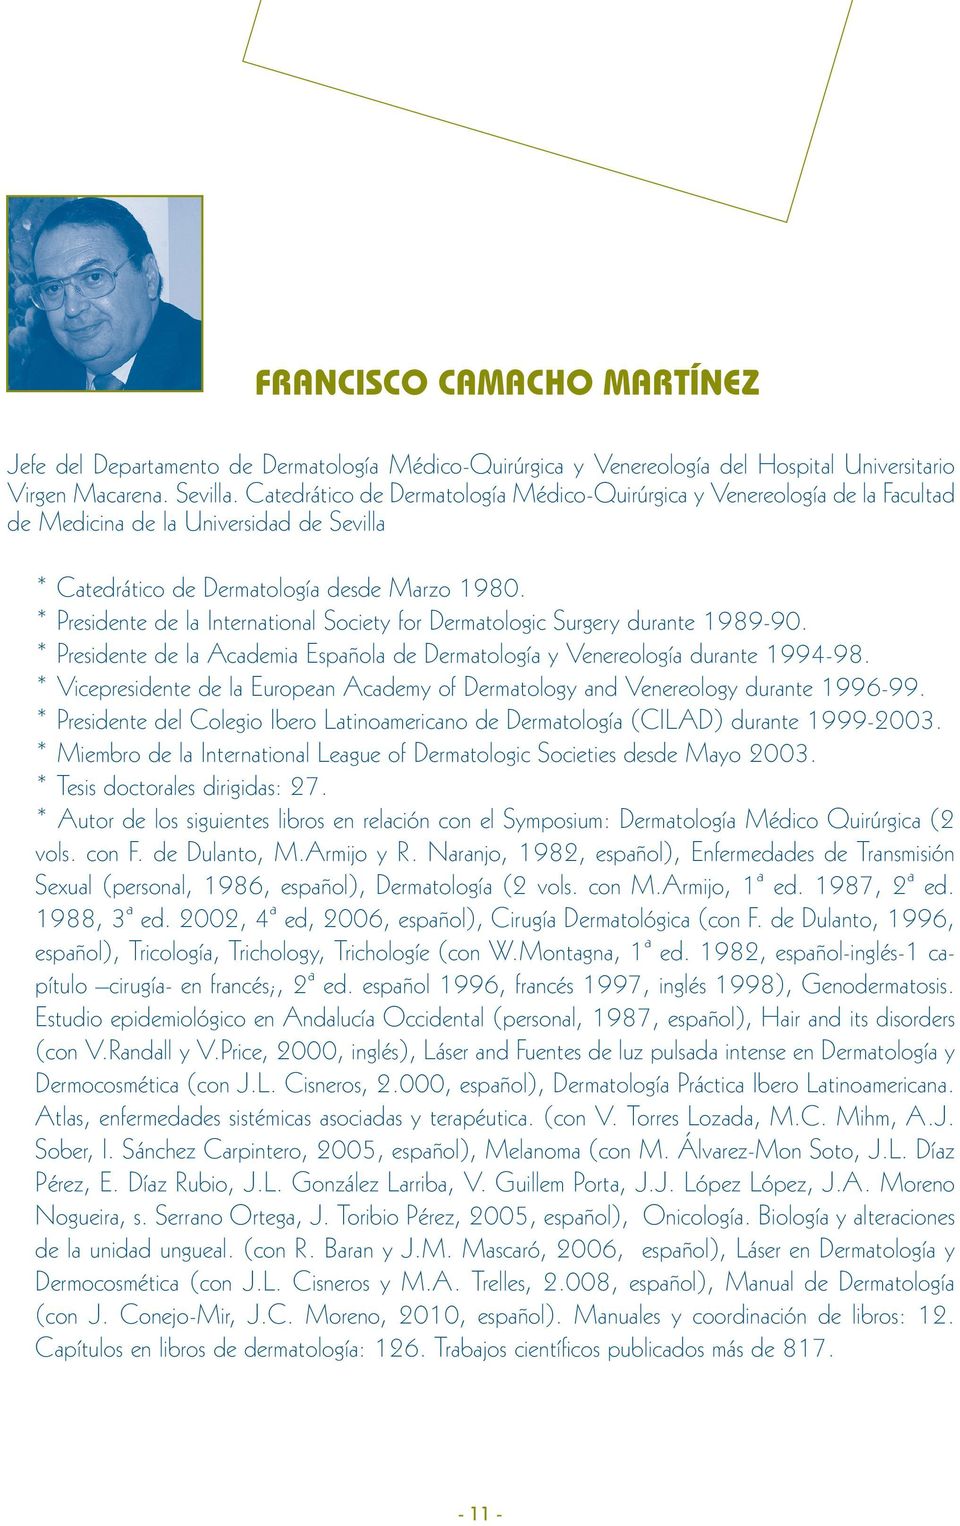 * Presidente de la International Society for Dermatologic Surgery durante 1989-90. * Presidente de la Academia Española de Dermatología y Venereología durante 1994-98.